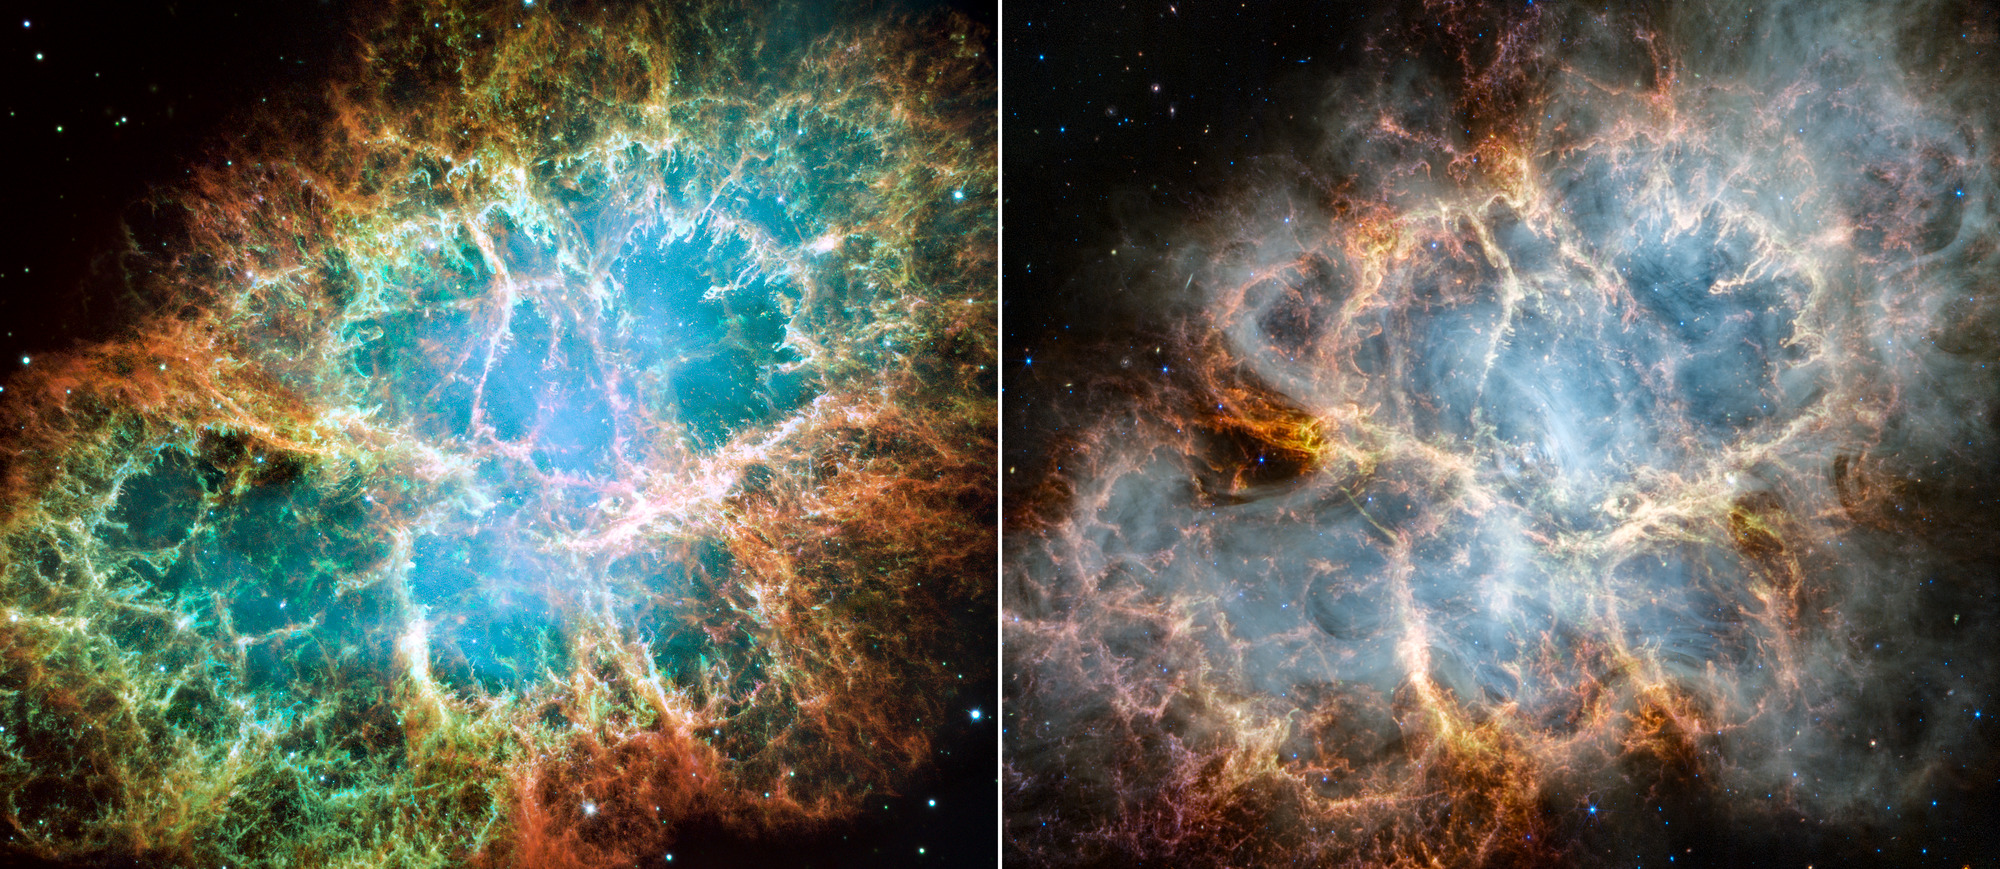 Параллельное сравнение Крабовидной туманности, видимой космическим телескопом Хаббл в оптическом свете (слева) и космическим телескопом Джеймс Уэбб в инфракрасном свете (справа). 